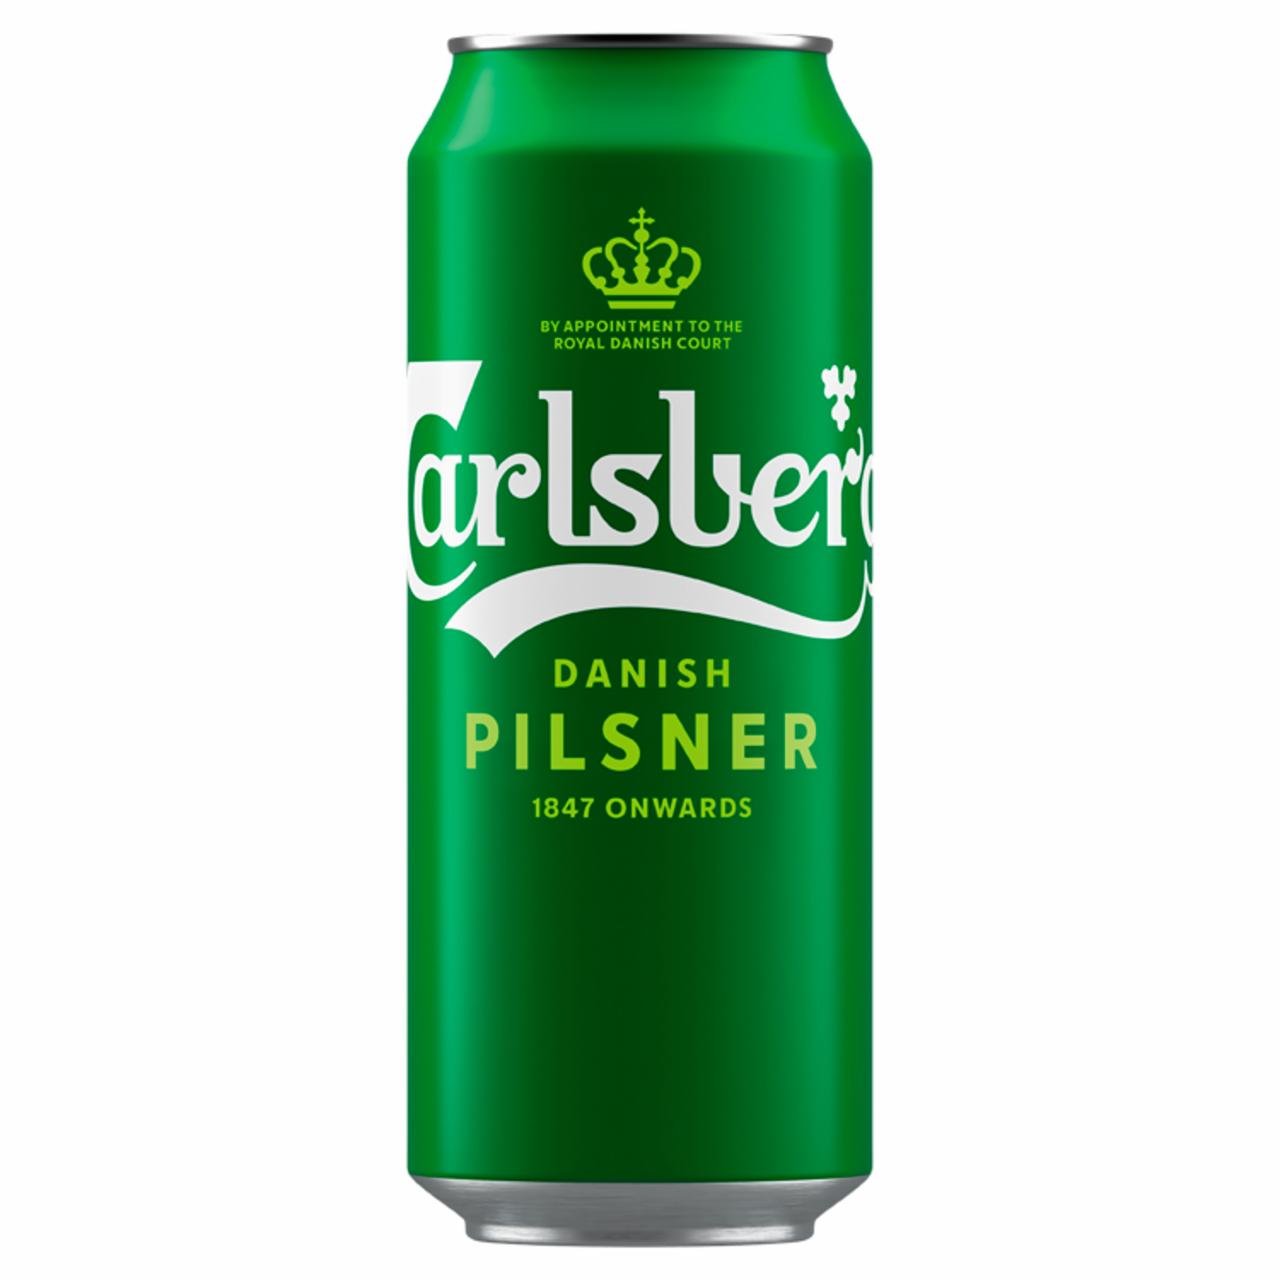 Képek - Carlsberg minőségi világos sör 5% 0,5 l